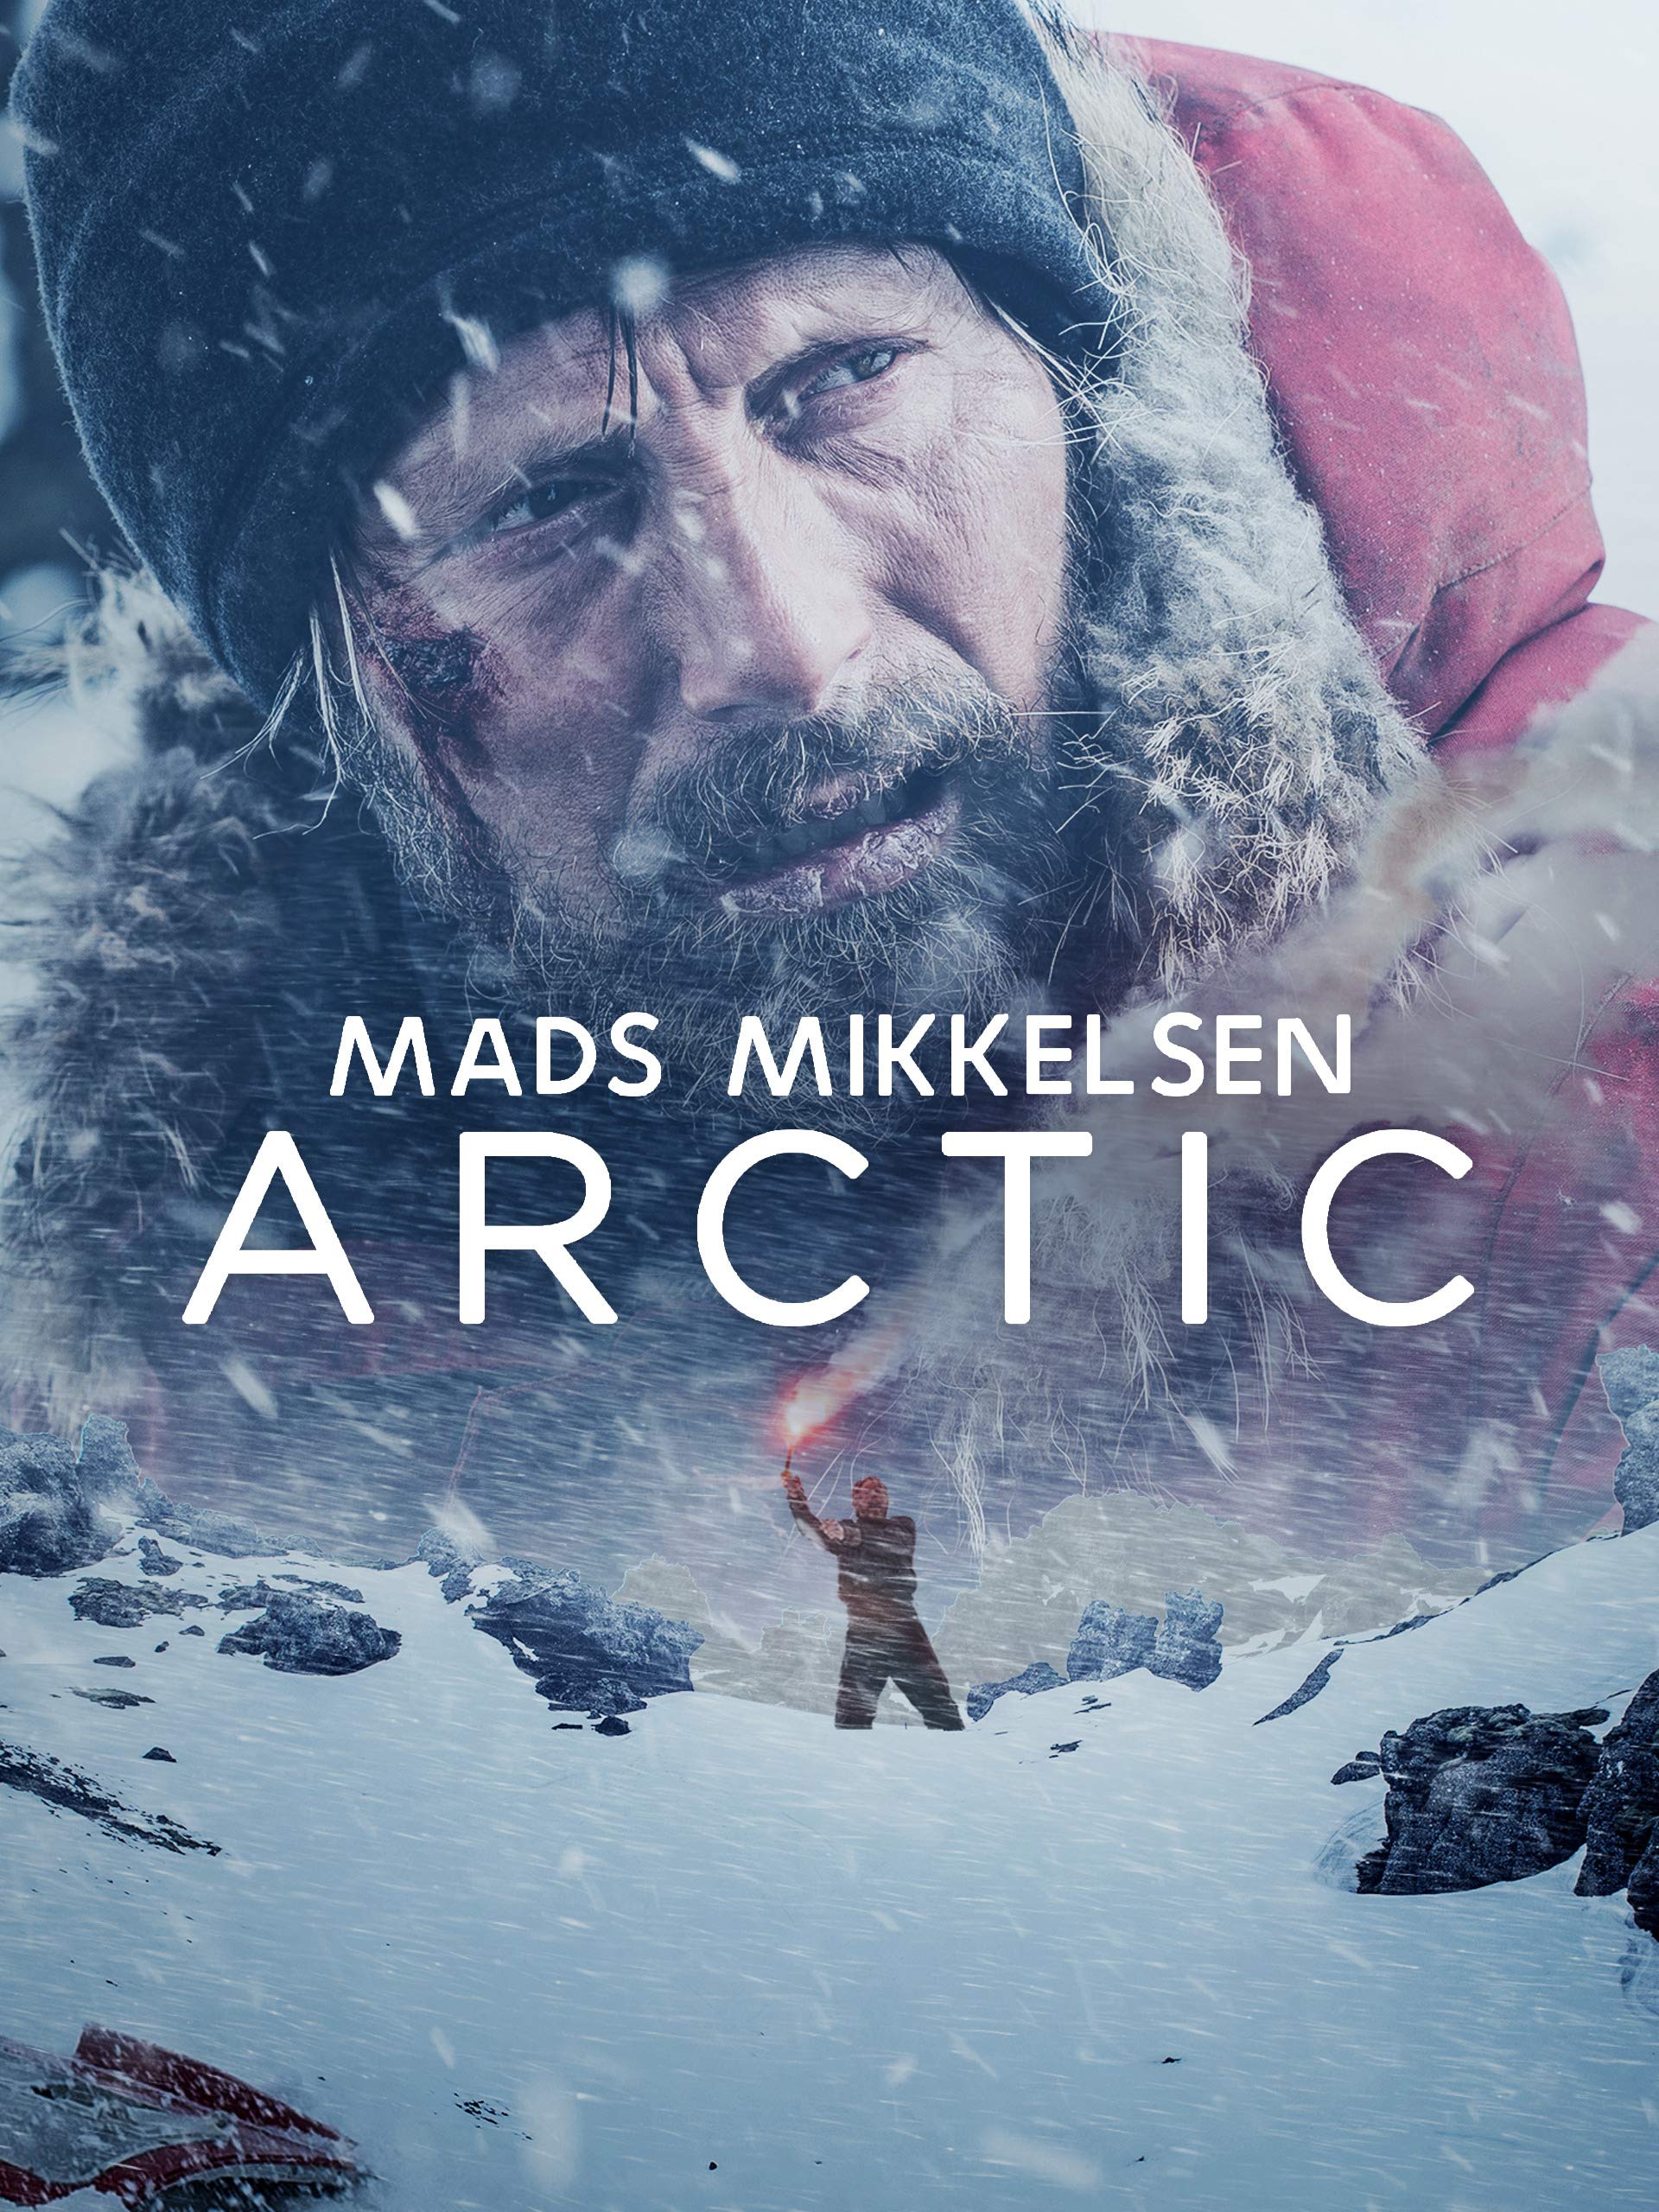 ดูหนังออนไลน์ฟรี Arctic 2018 เกือบตายห่า อย่าตาย เว็บดูหนังใหม่ฟรี